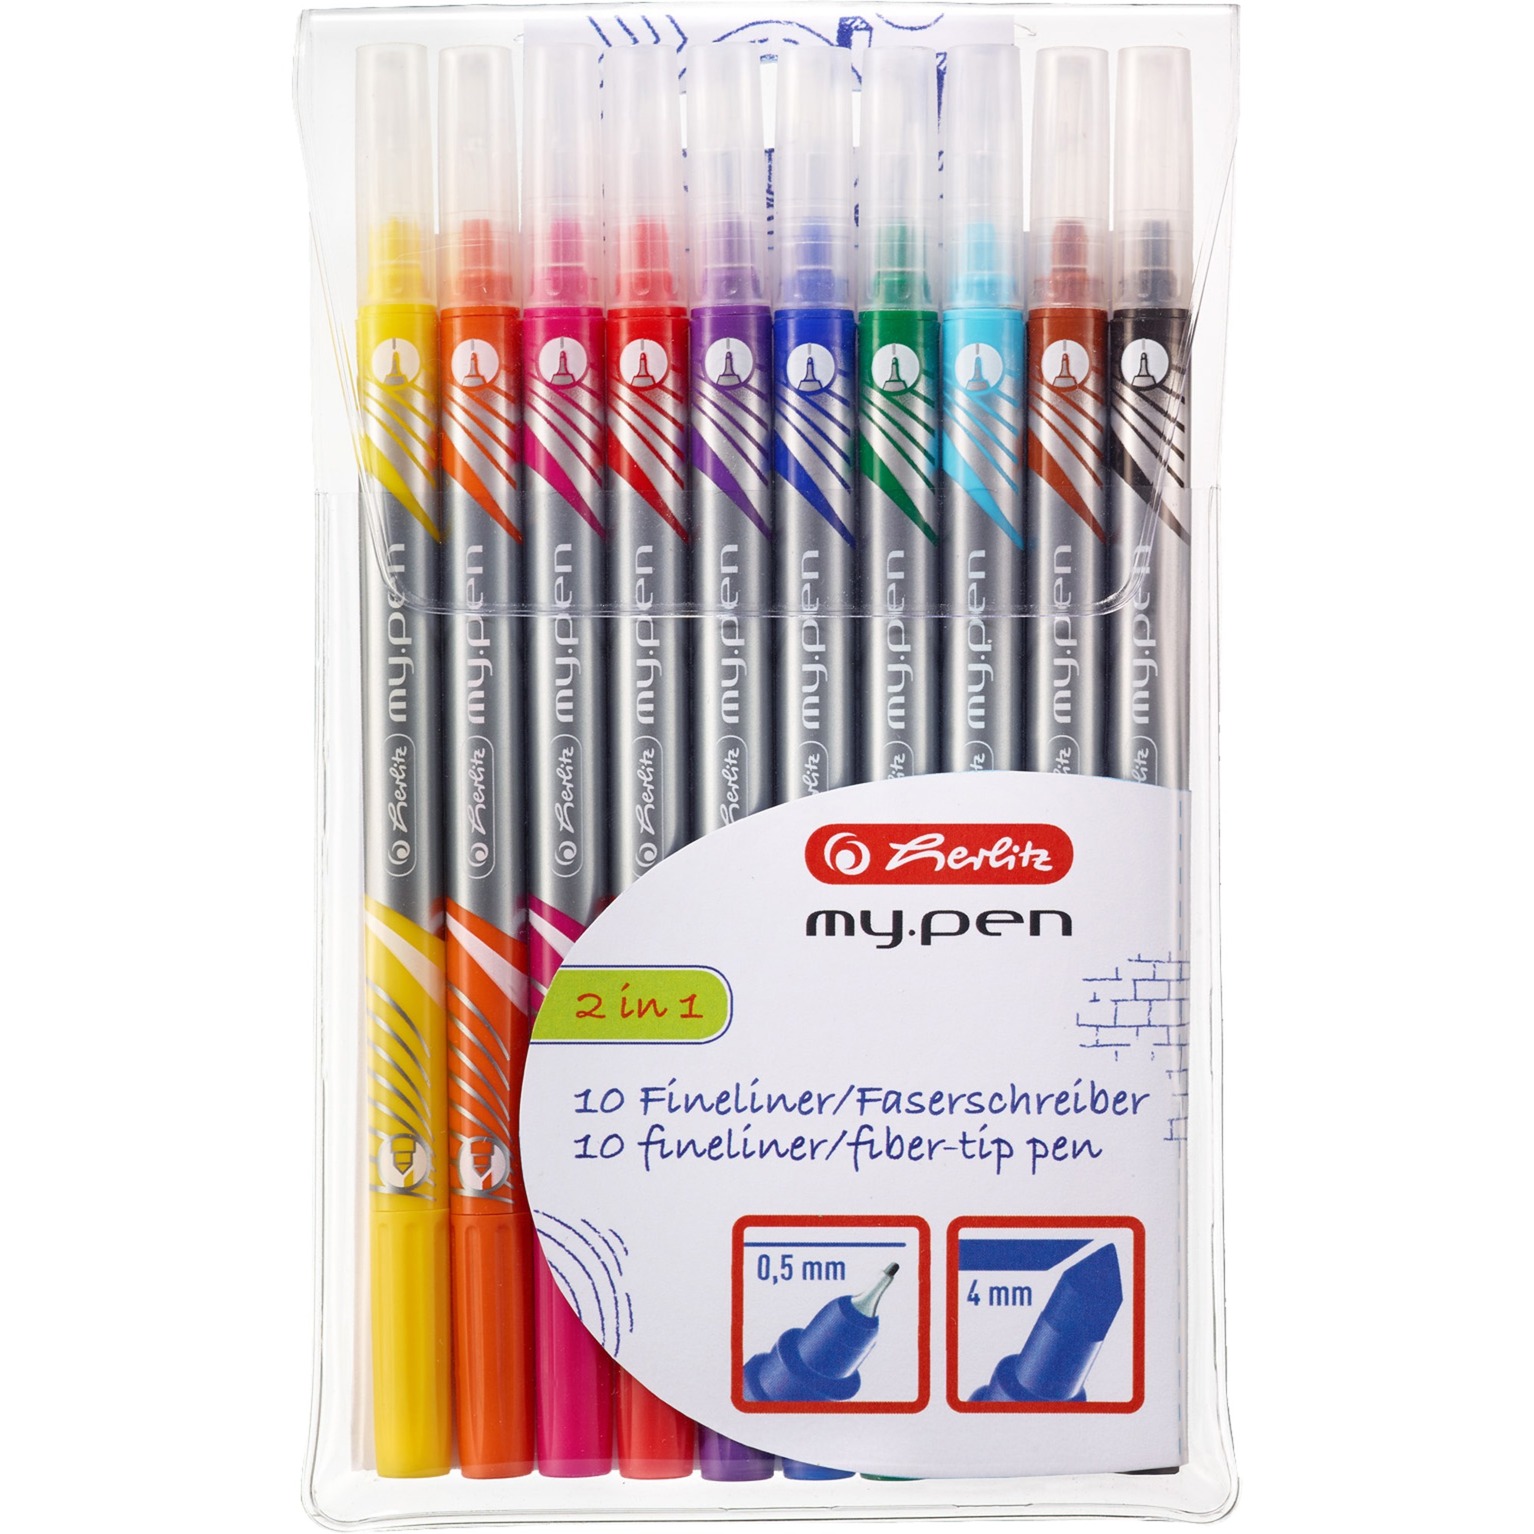 Image of Alternate - Fineliner-Faserschreiber my.pen, Stift online einkaufen bei Alternate